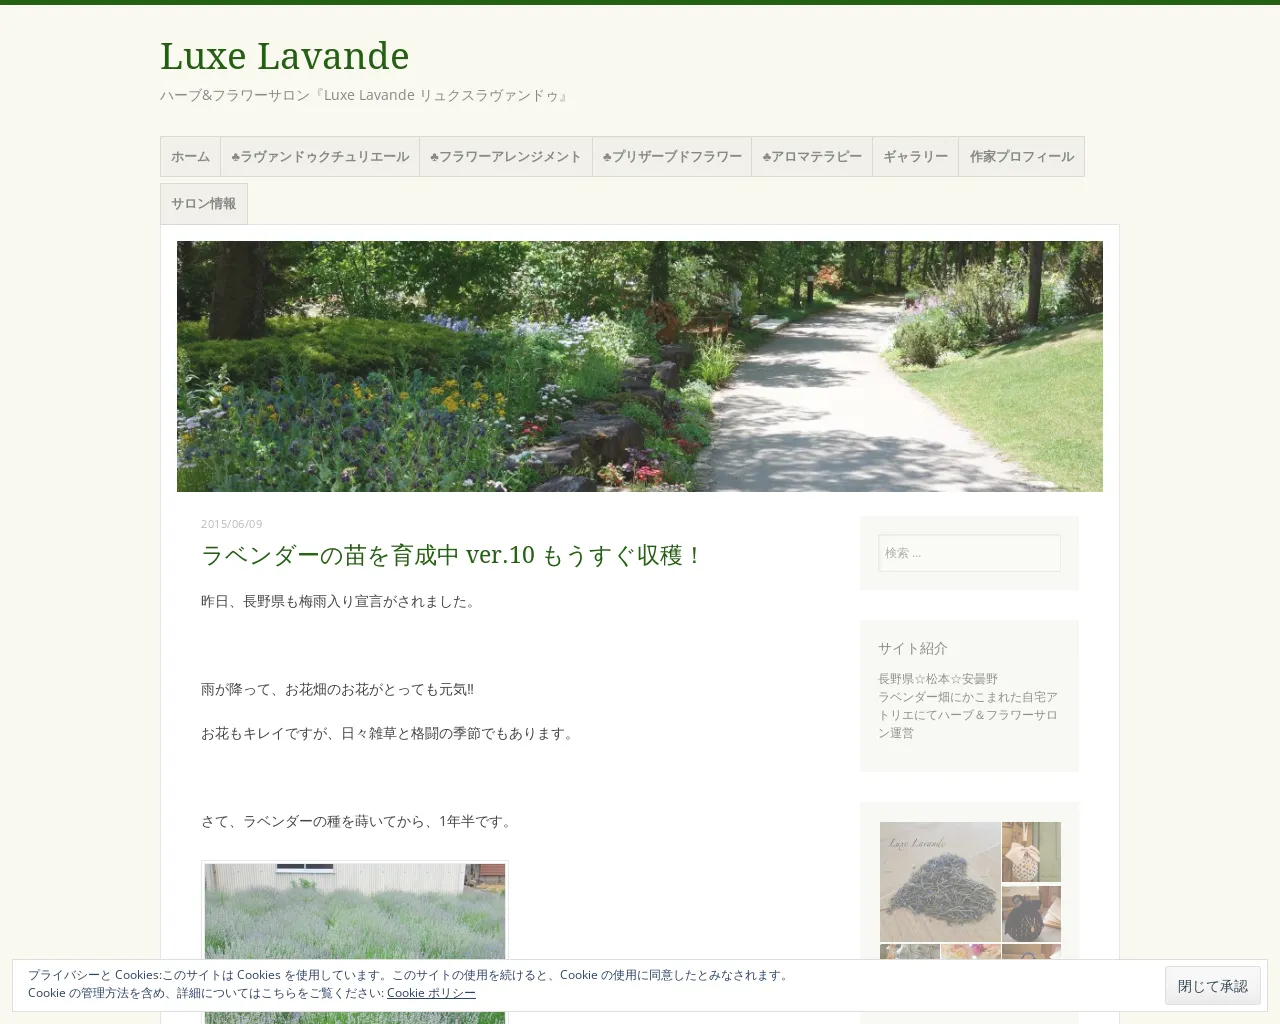 ハーブ&フラワーサロン『Luxe Lavande リュクスラヴァンドゥ』 site